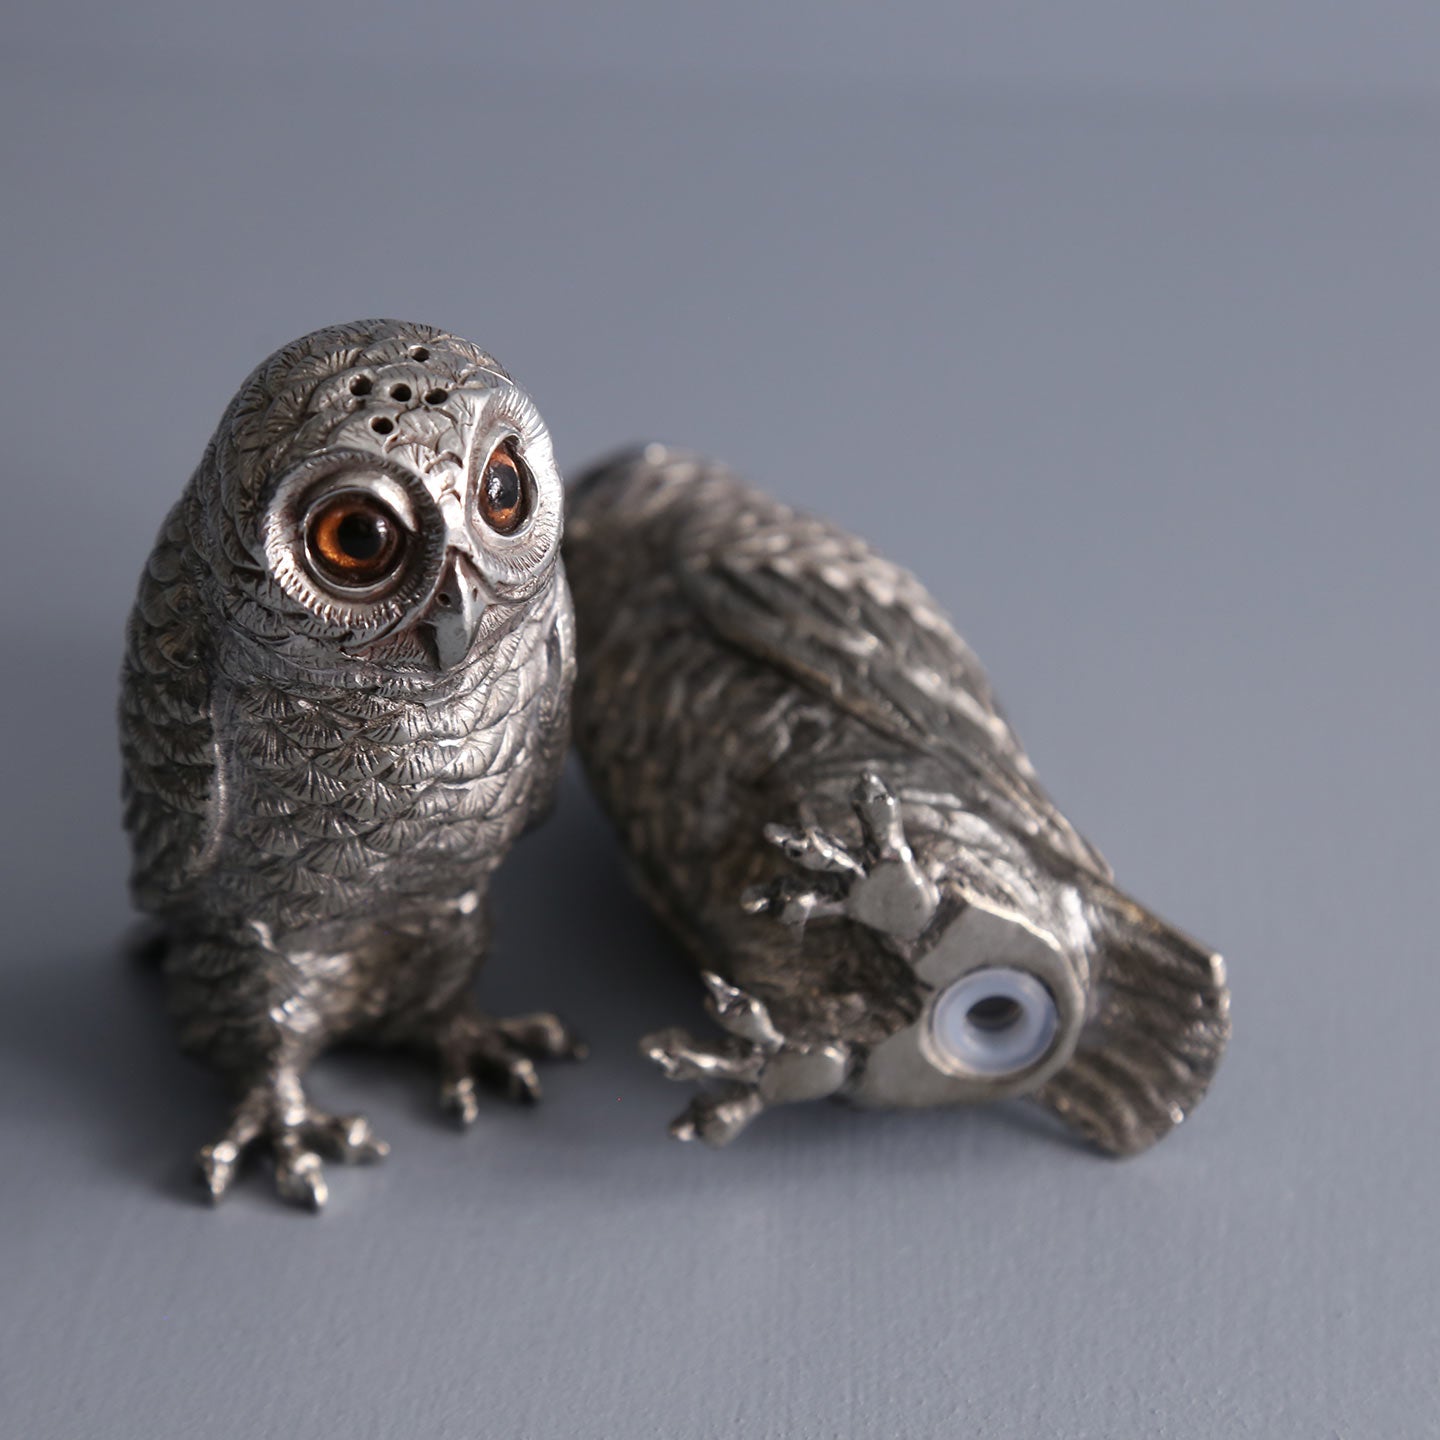 Figural Owl Salt & Pepper Shaker